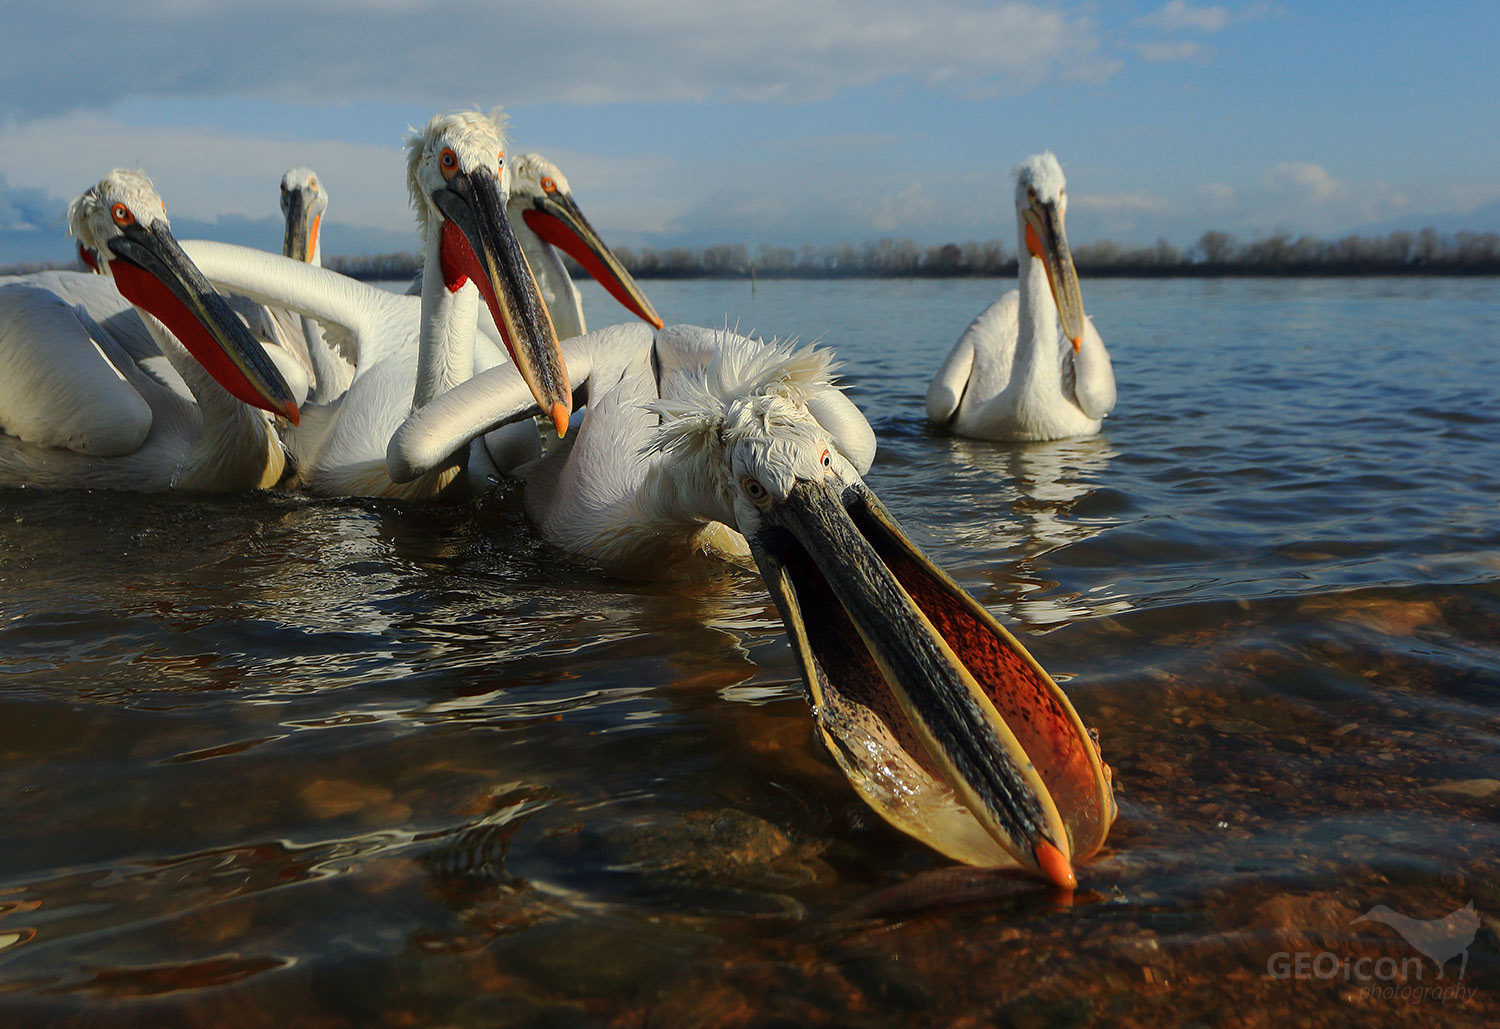 Dalmatian pelican / pelikán kadeřavý (Pelecanus crispus)